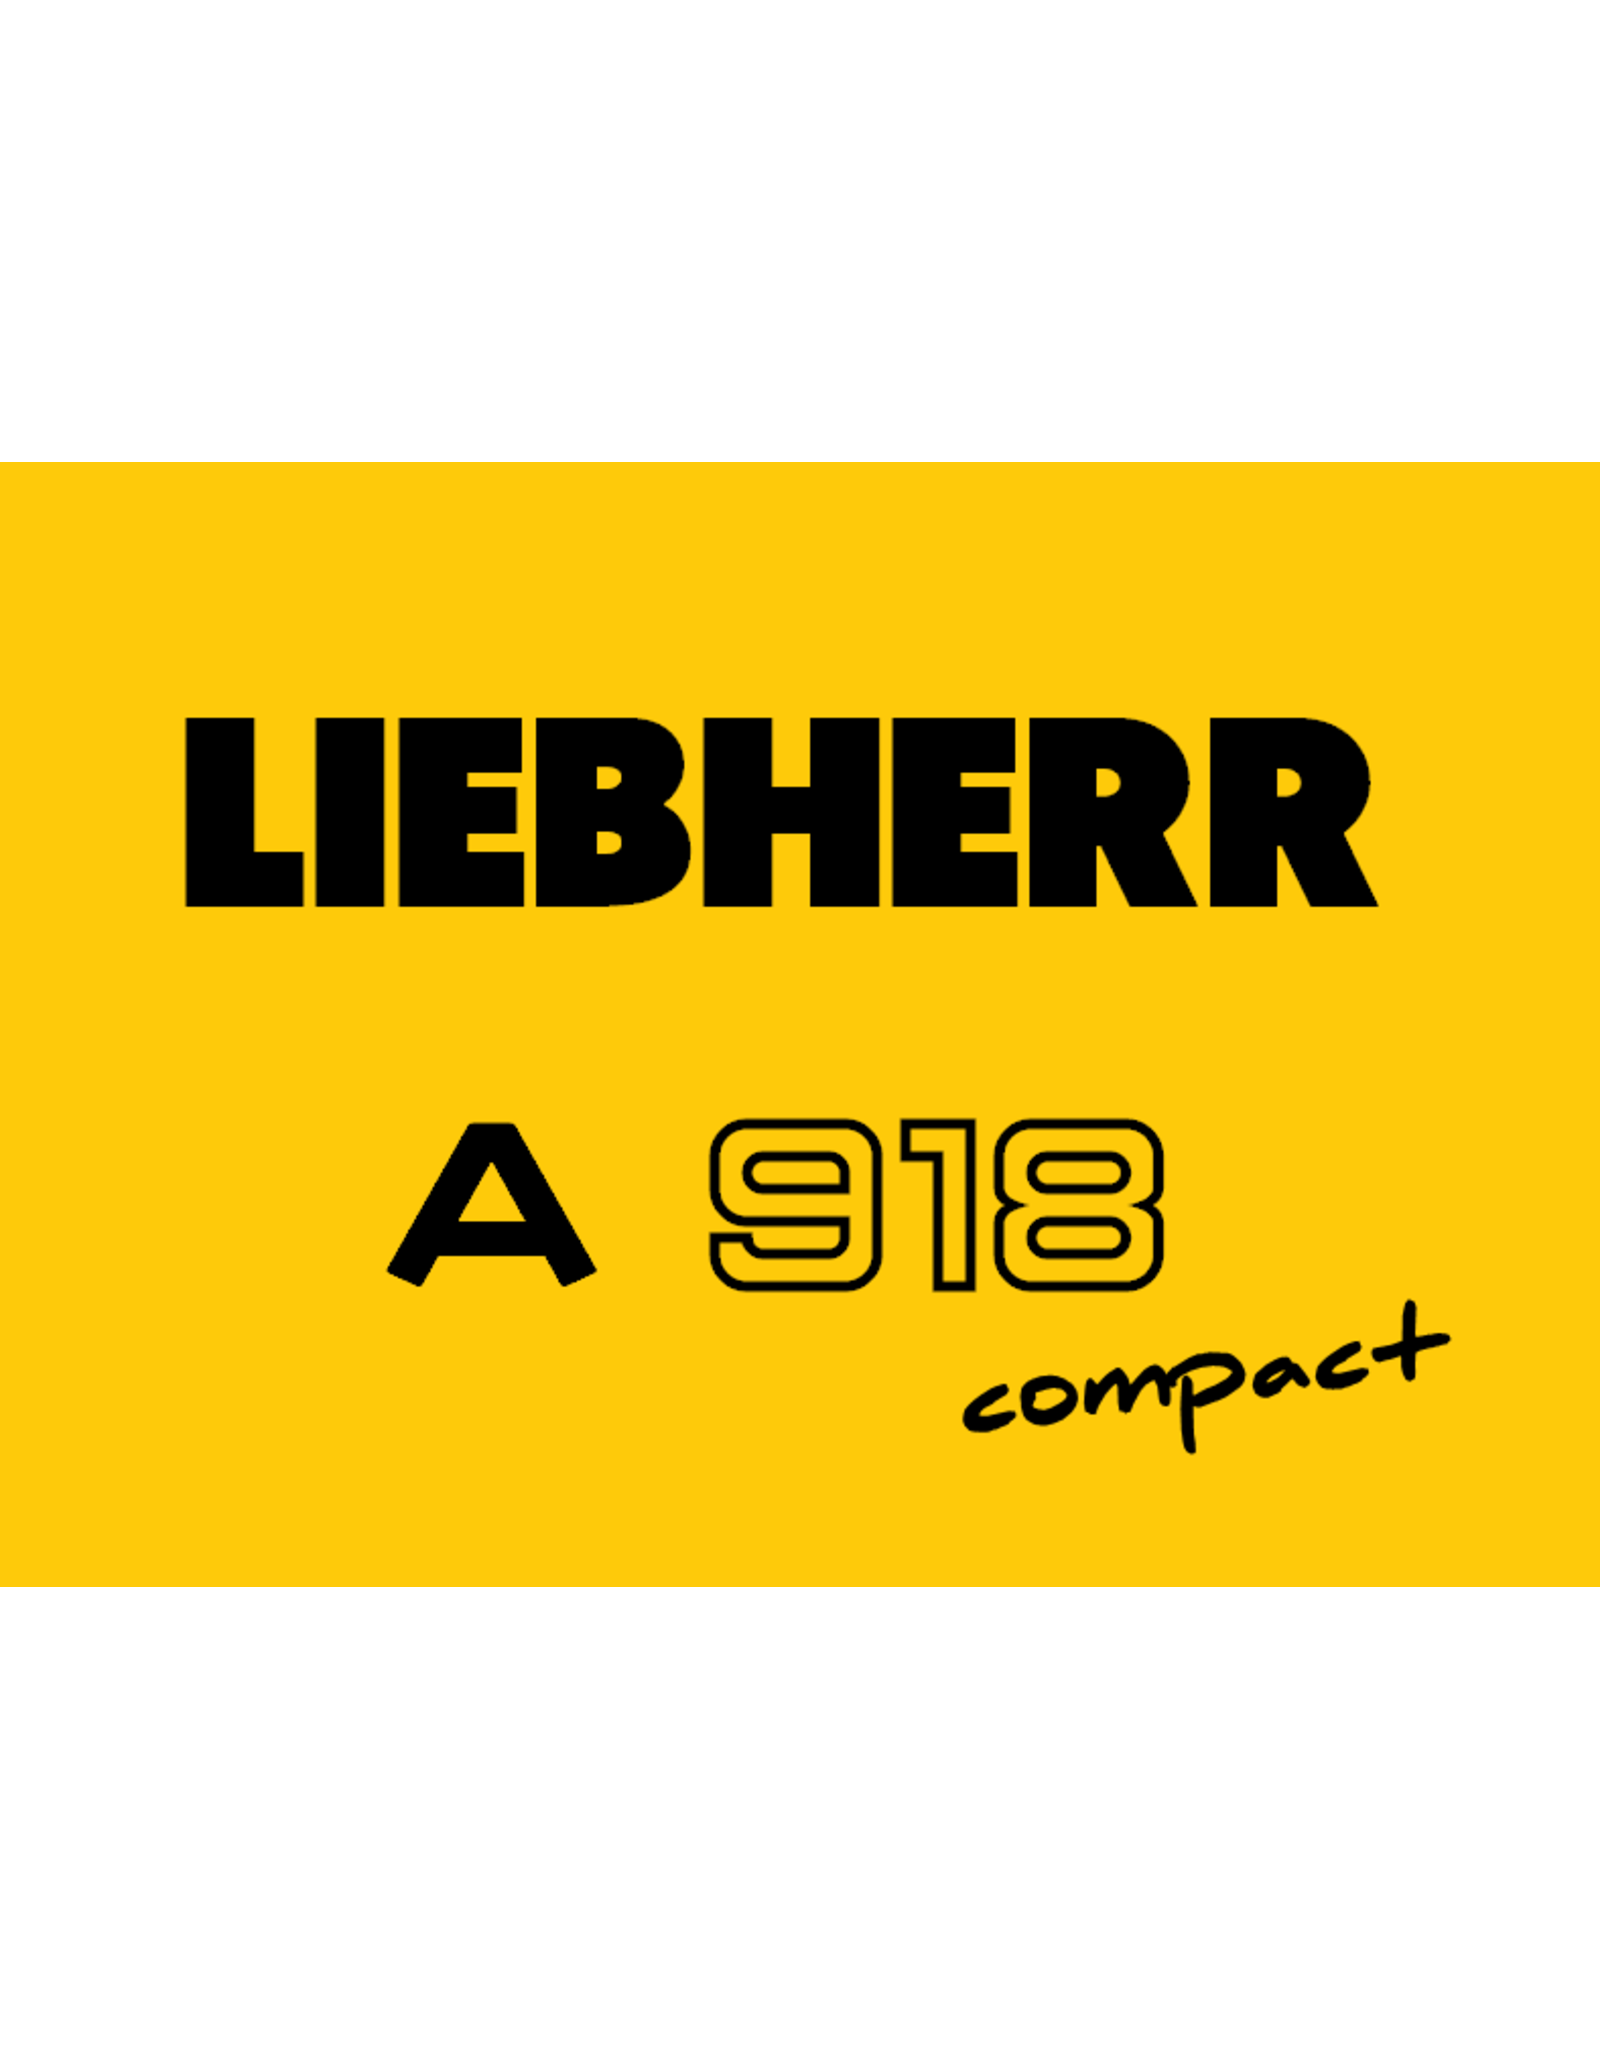 Echle Hartstahl GmbH FOPS pour Liebherr A 918 Compact